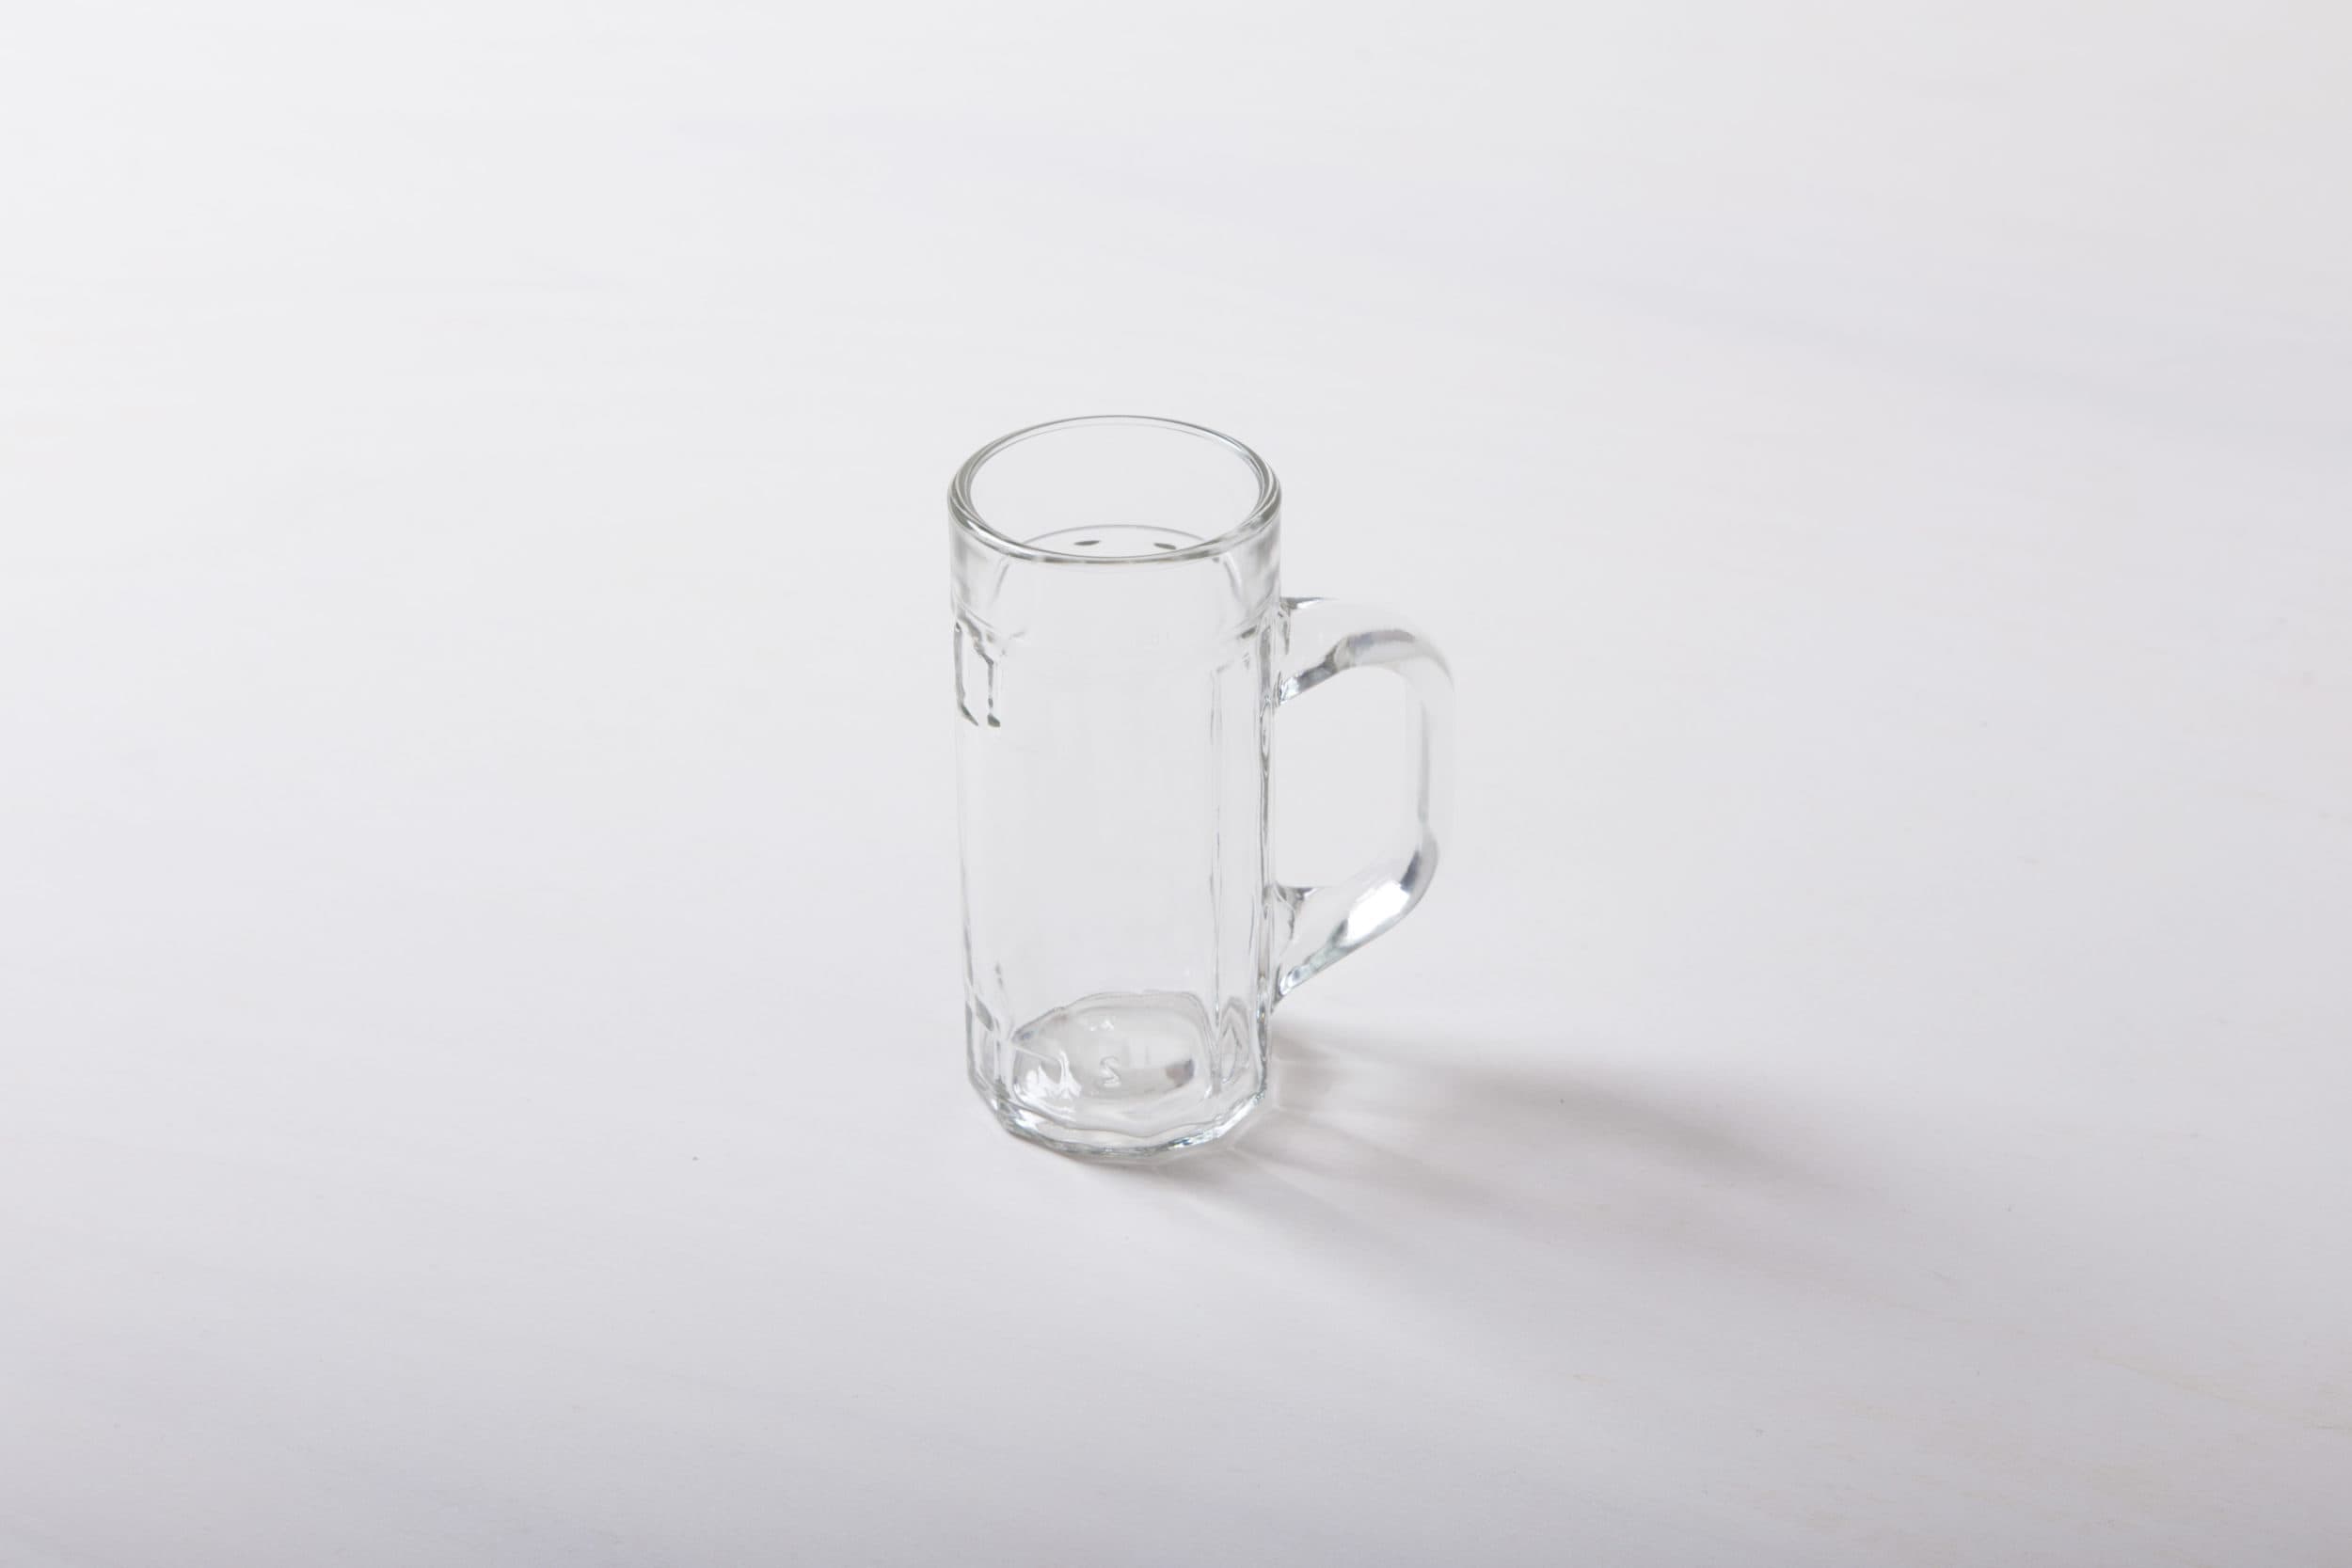 Gläser, Glasartikel mieten, Biergläser leihen